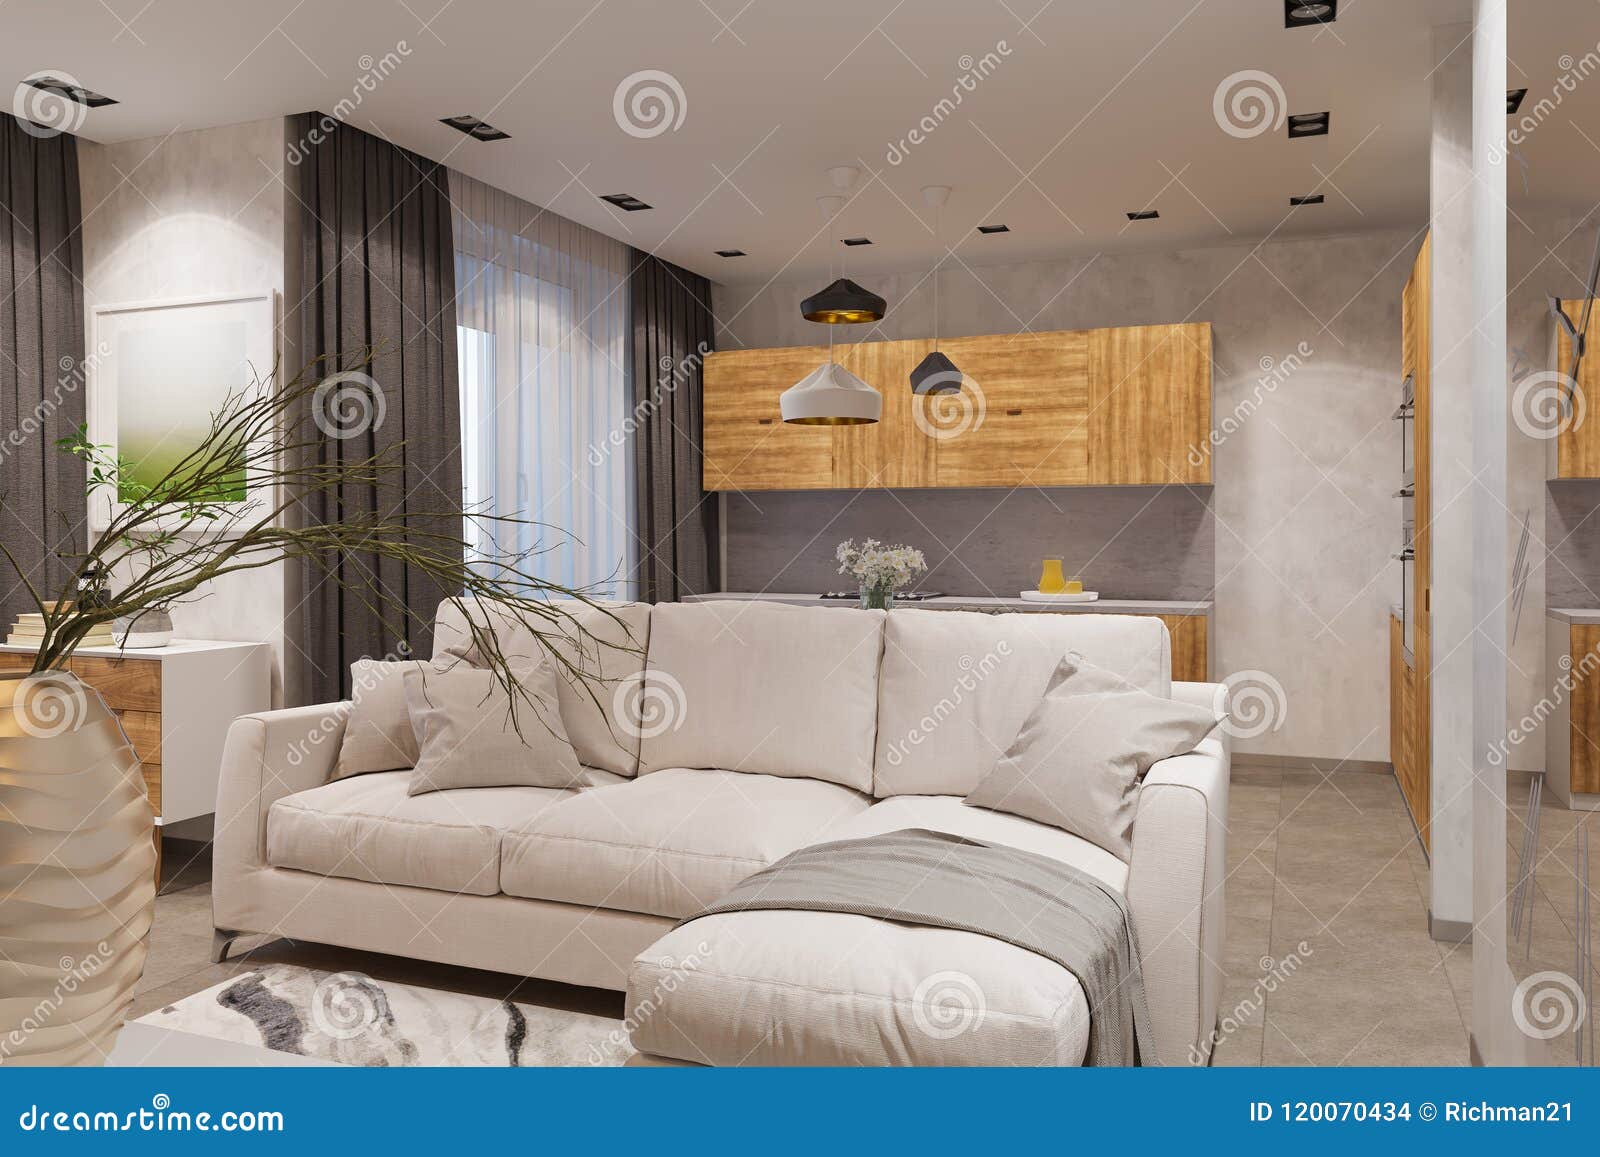 3d Render Interior Design In Scandinavian Style Living Room